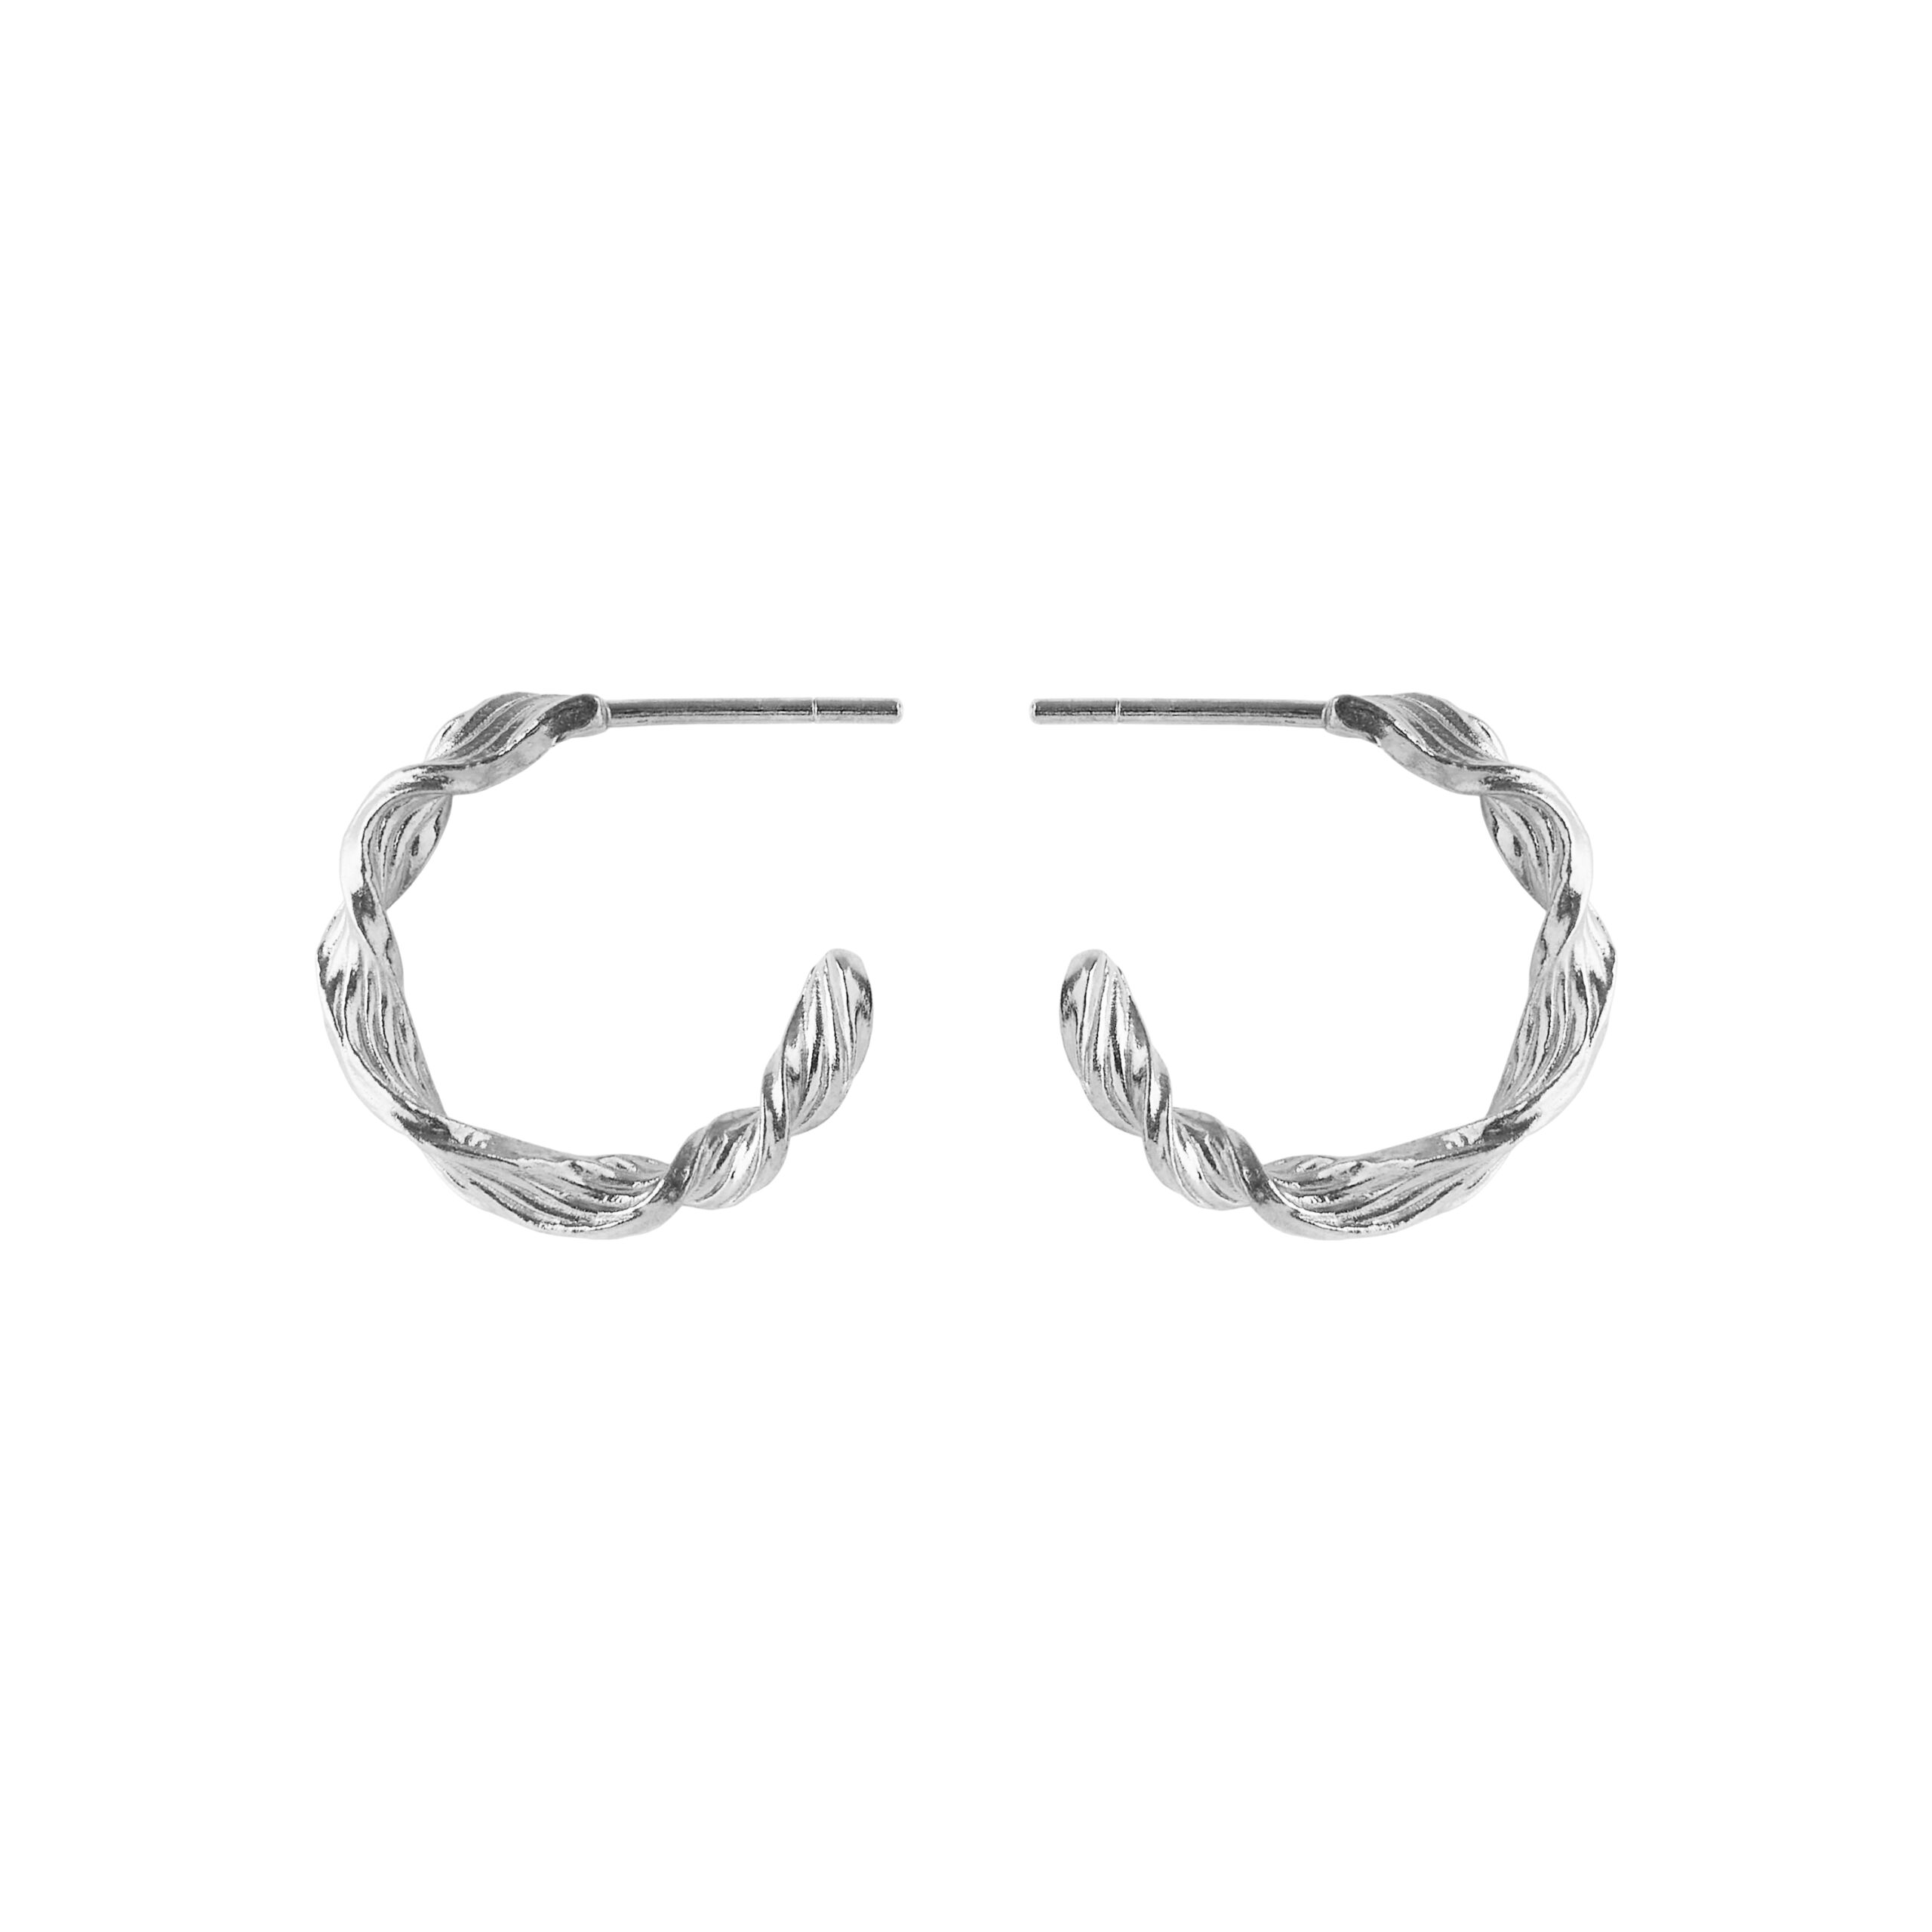 Pernille Corydon præsenterer de elegante Dancing Wave Hoops, der er inspireret af havets rolige bevægelser. Disse øreringe har et enkelt og unikt design med en smukt snoet form og er tilgængelige i to størrelser. Fremstillet med certificeret genbrugssølv fås de både i sølv og forgyldt sølv, og de måler 20 mm i diameter.